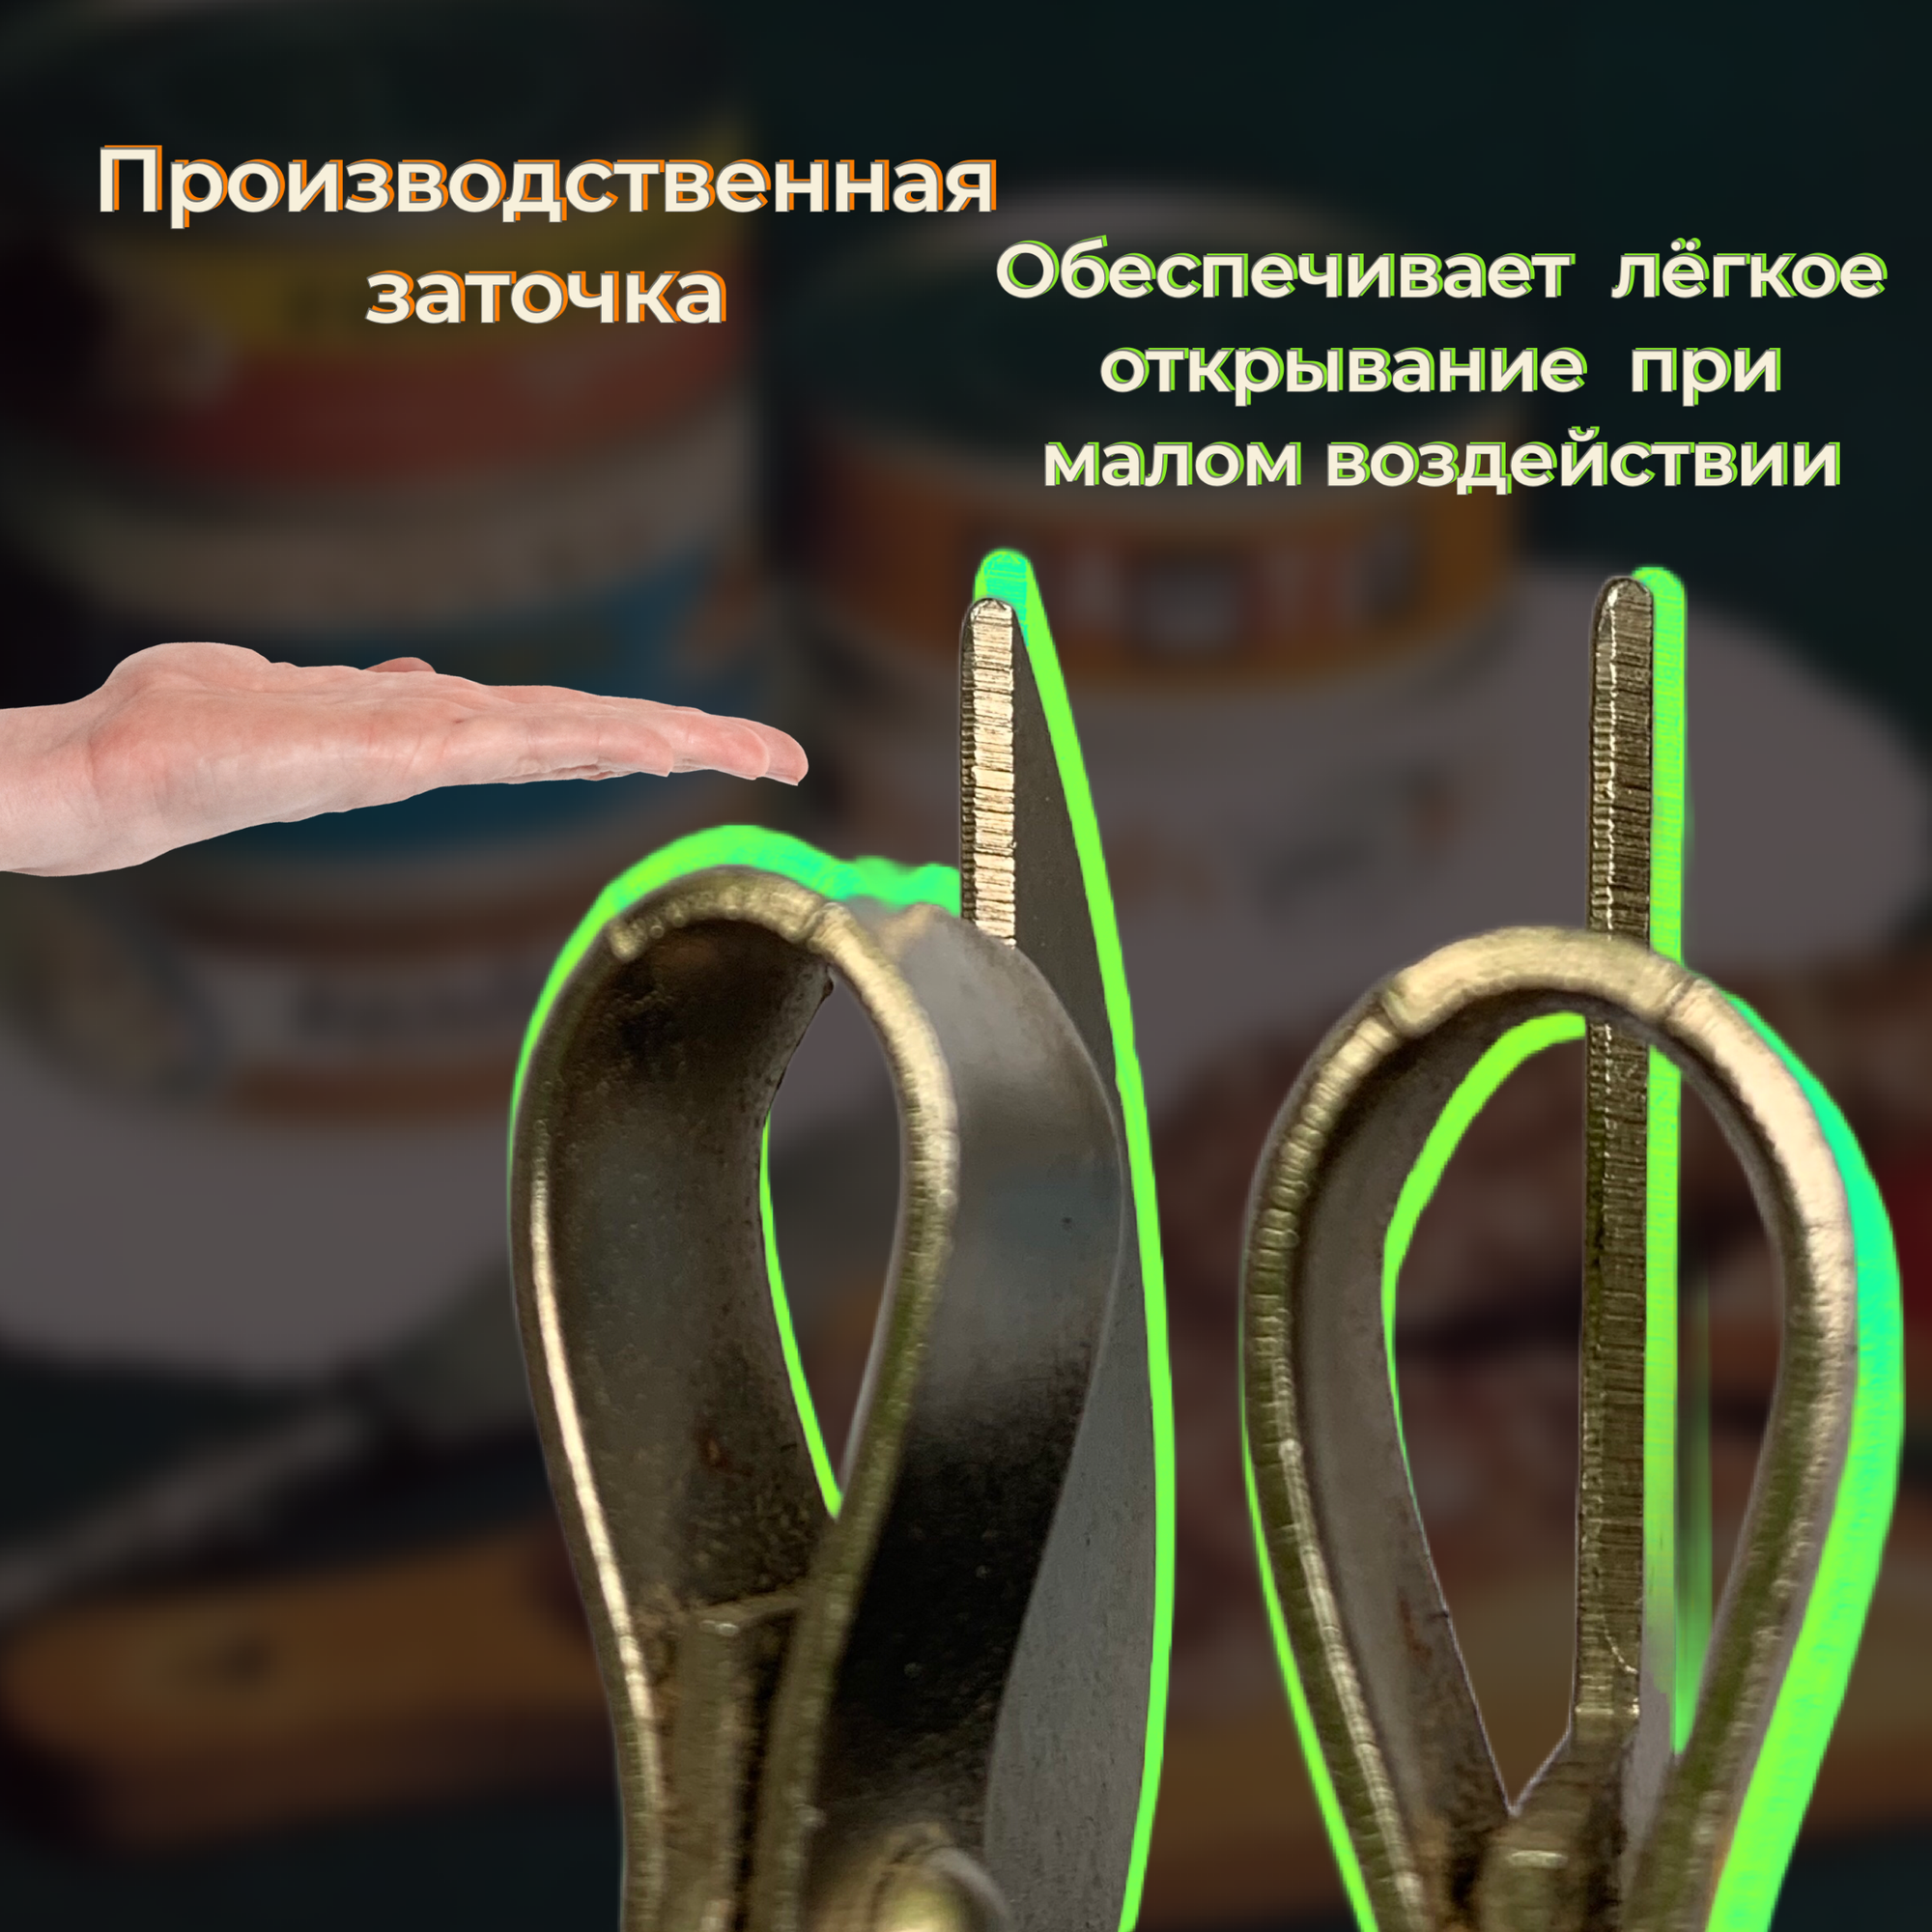 Открывашка с деревянной ручкой для консервных банок СССР, открывалка для бутылок, консервов, консервный нож